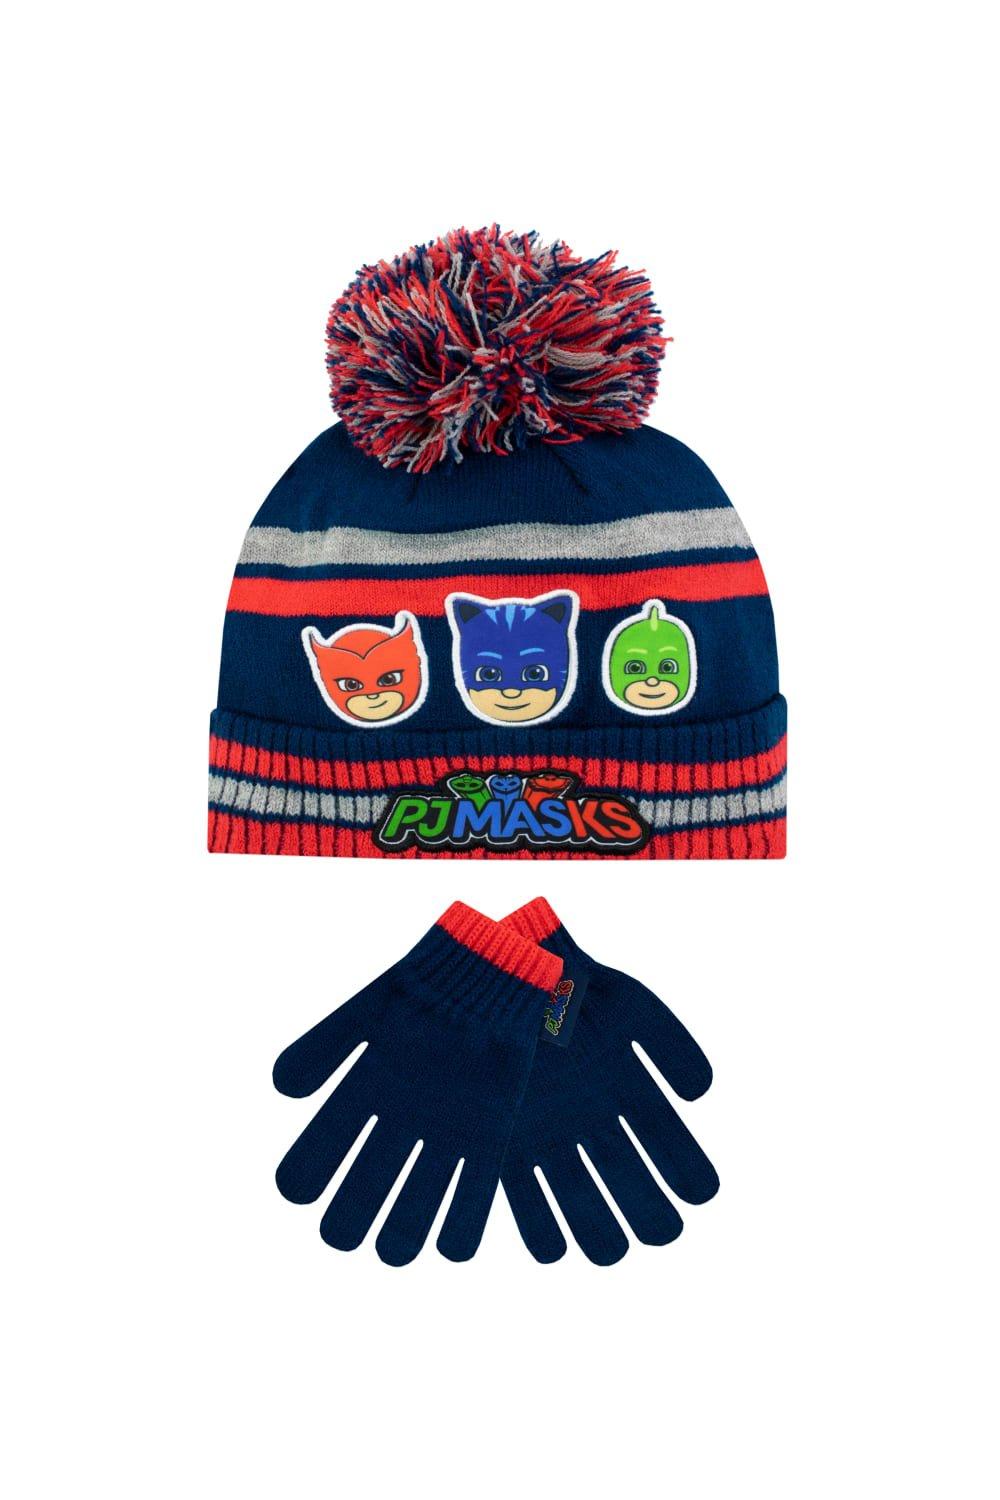 Детский комплект шапки и перчаток PJ Masks, синий детский темно синий берет детский берет красивая универсальная восьмиугольная шапка однотонная плоская шапка для мальчиков и девочек ша